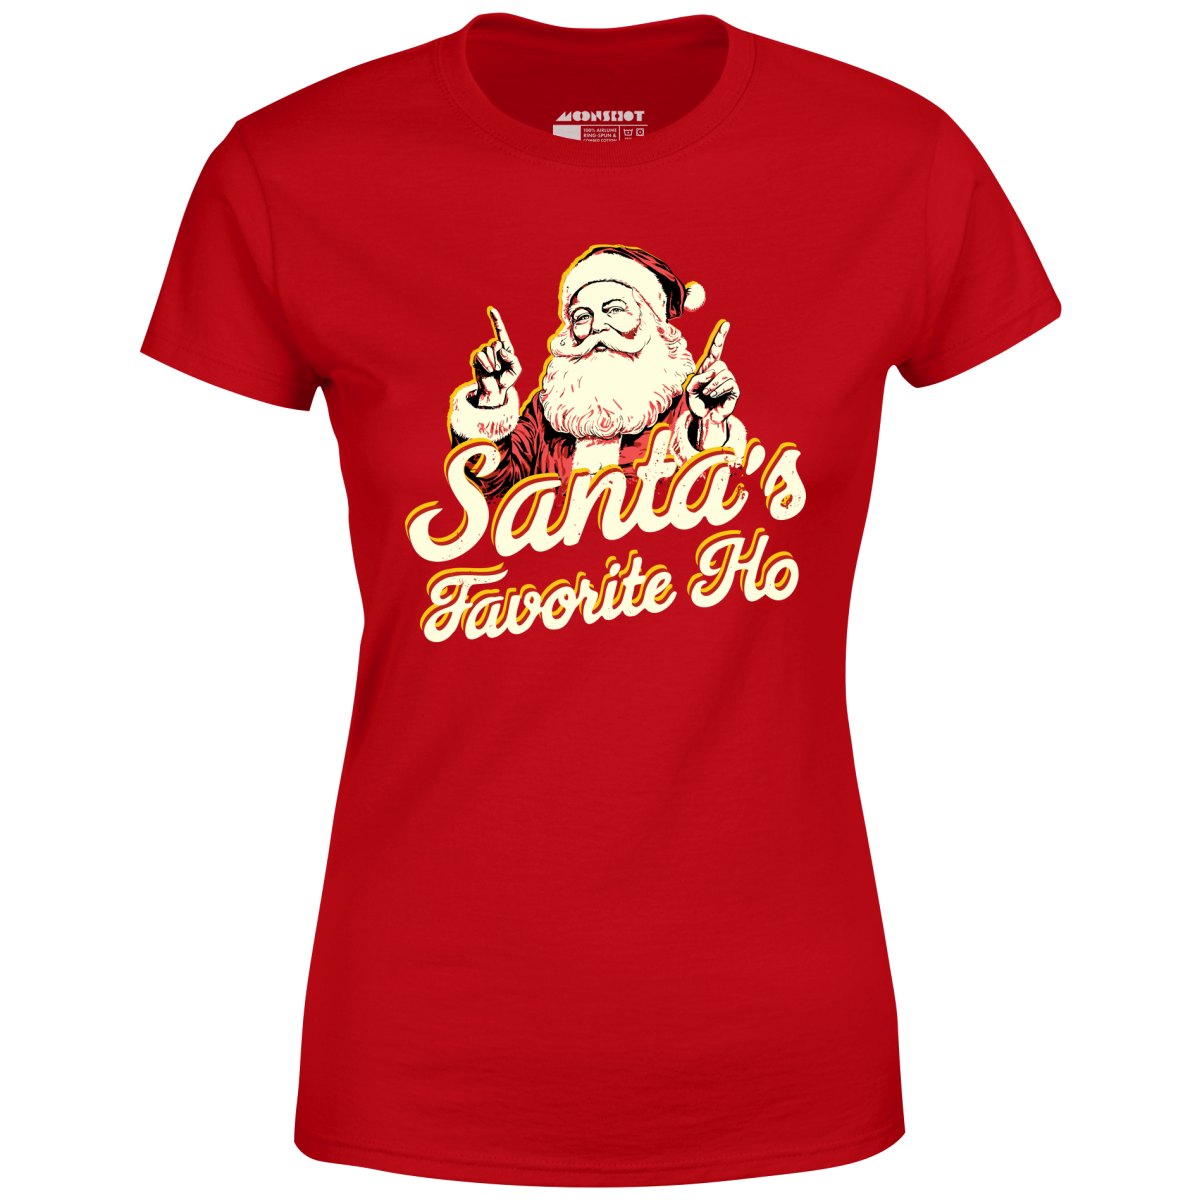 Santa's Favorite Ho v2 - Women's T-Shirt